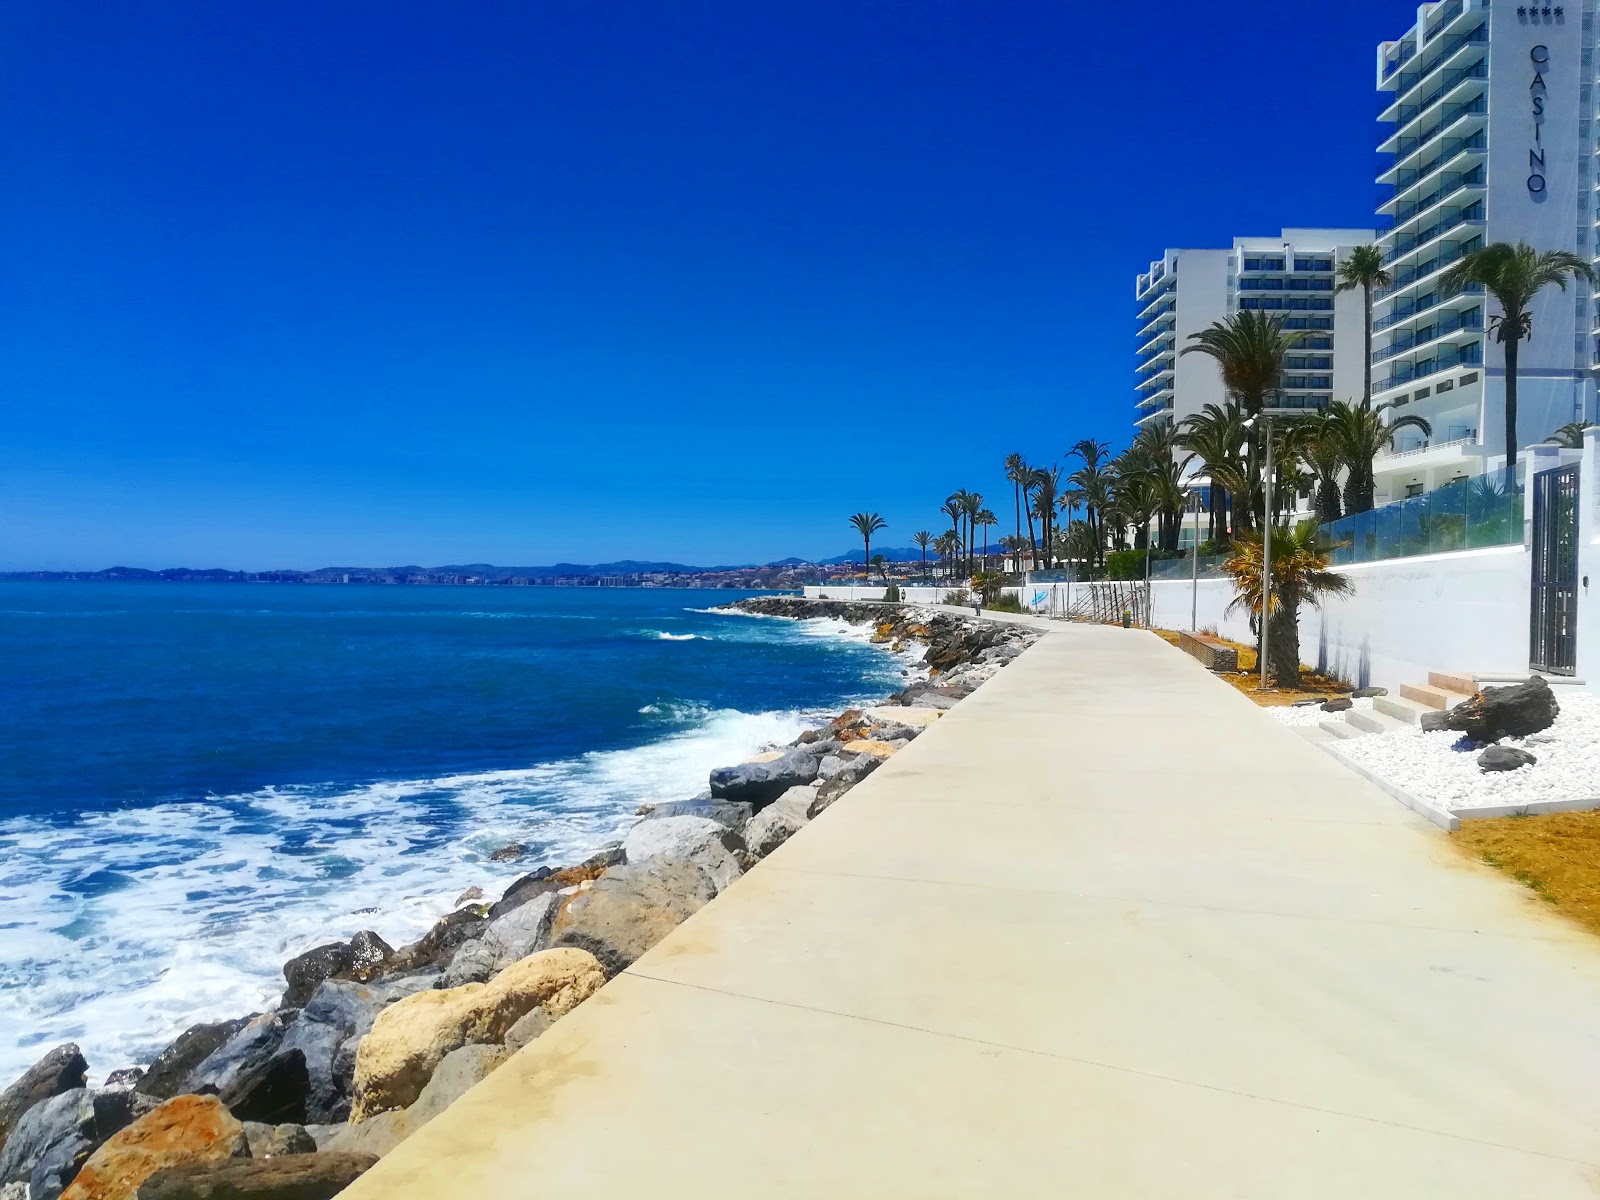 Foto av Playa Torrevigia med rak strand